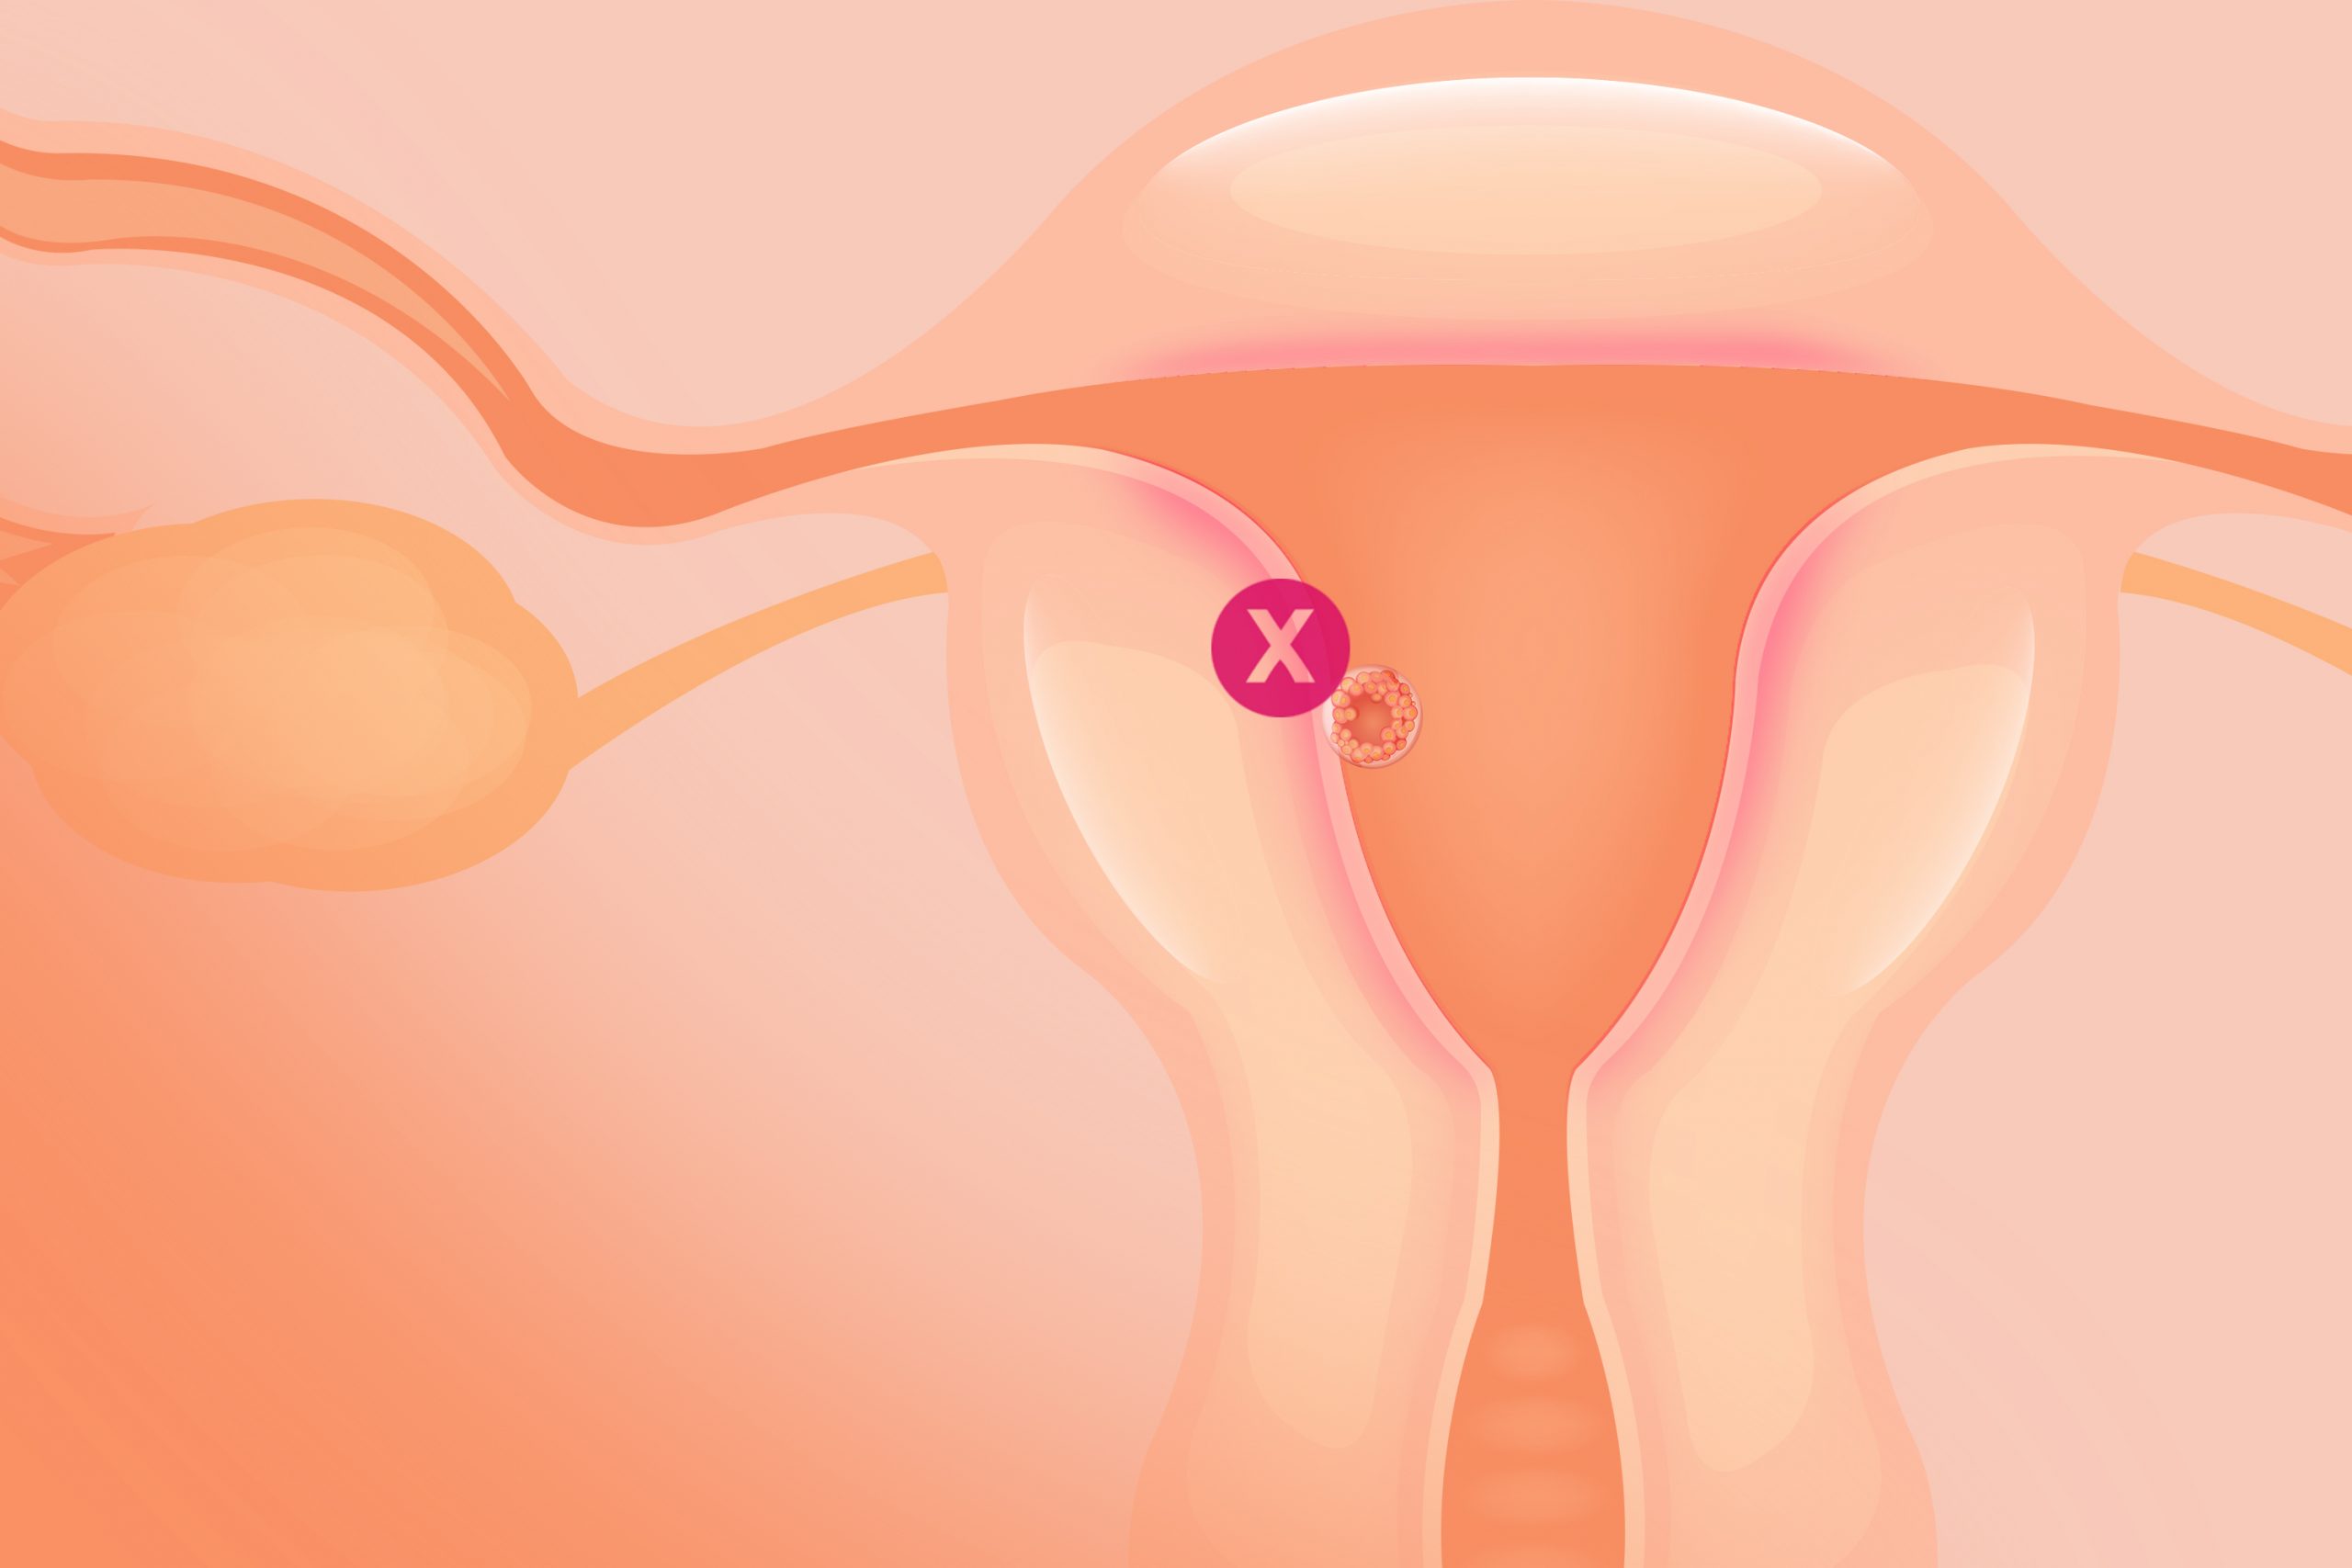 Endometrite e falhas de implantação: qual a relação?